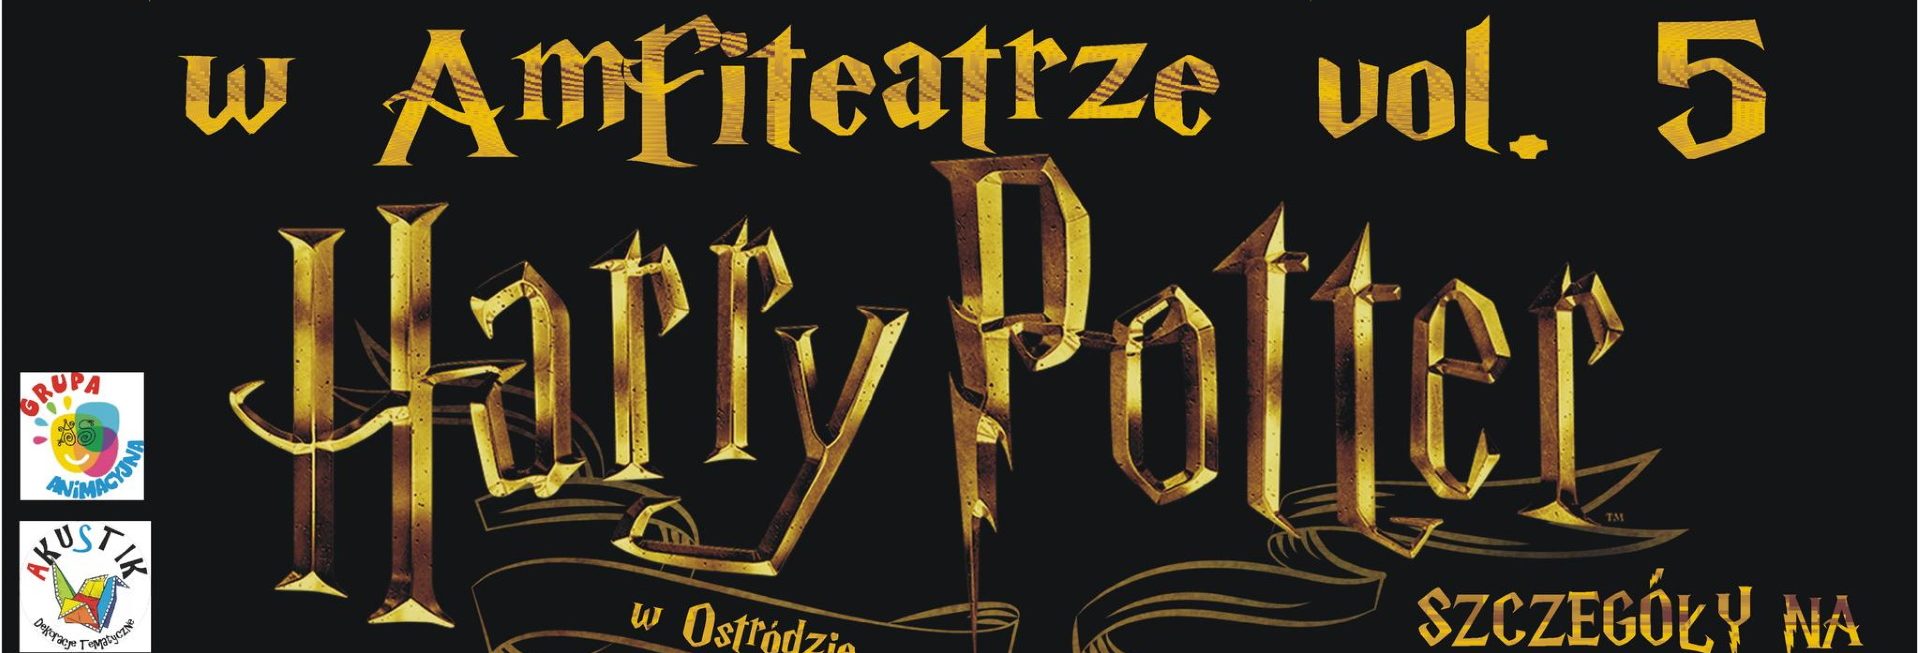 Plakat zapraszający od 22 stycznia do 5 lutego 2023 r. do Ostródy na Rodzinne Ferie w Amfiteatrze - Wystaw krainy magii i czarodziejstwa Harrego Pottera Ostróda 2023.